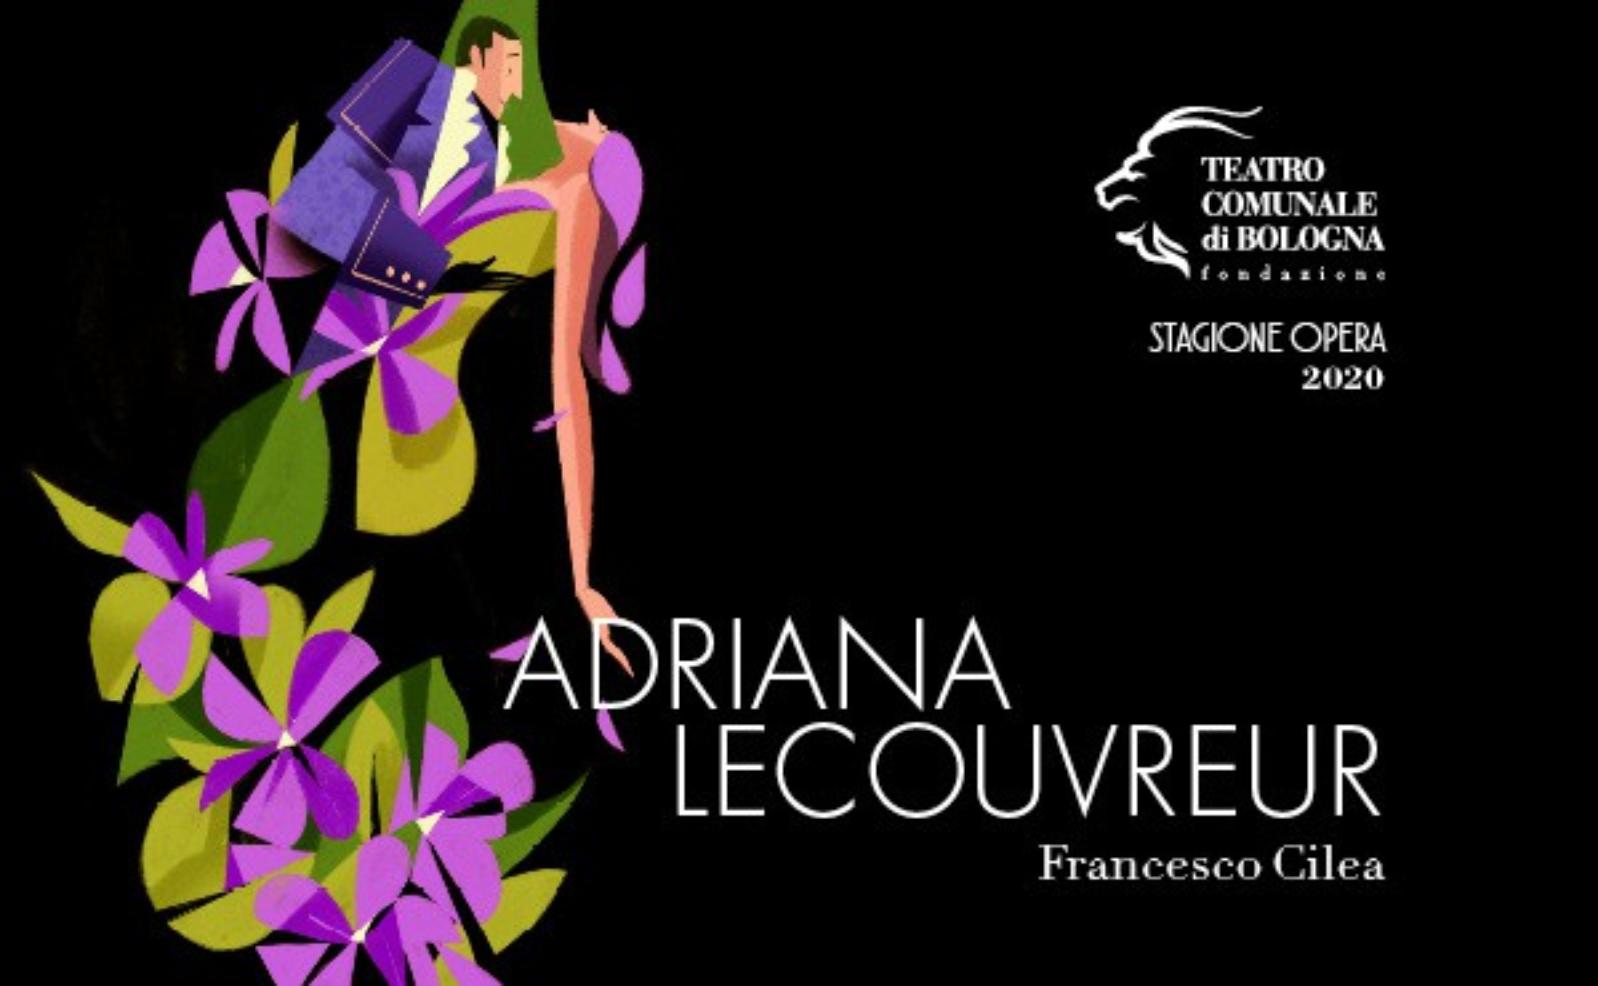 Adriana Lecouvreur - Francesco Cilea